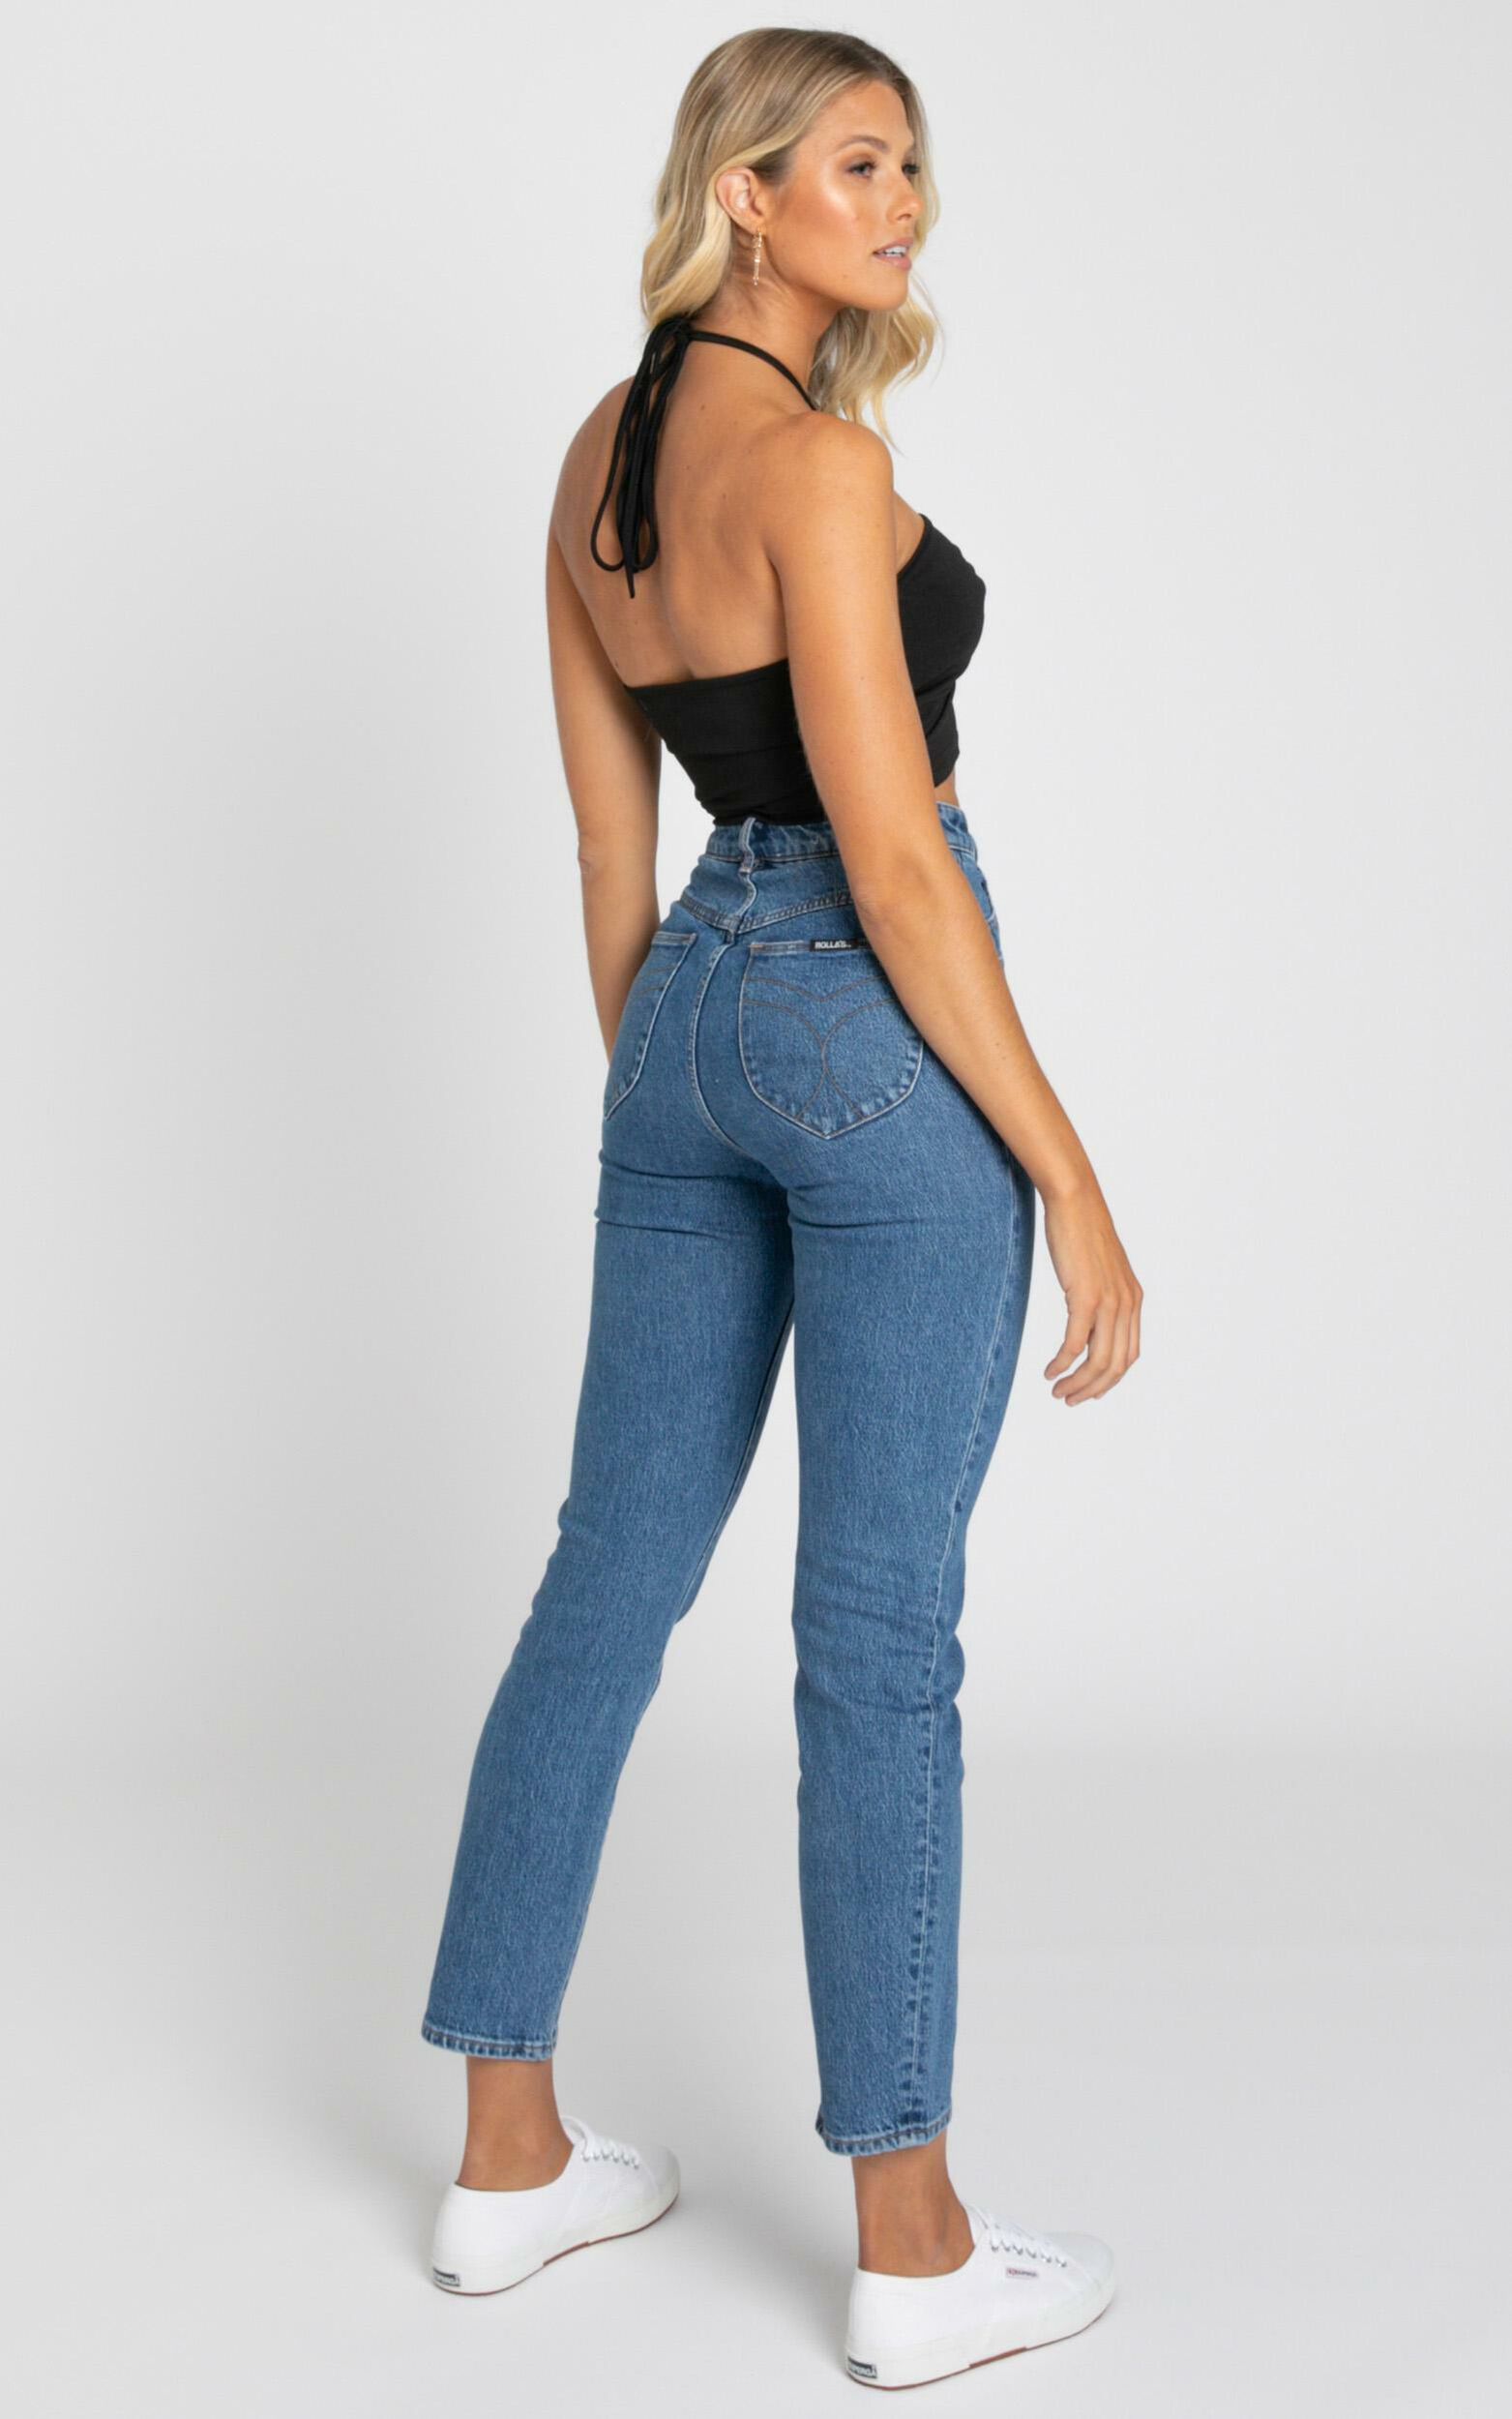 Rollas - Dusters Jeans in Sadie Blue | Showpo